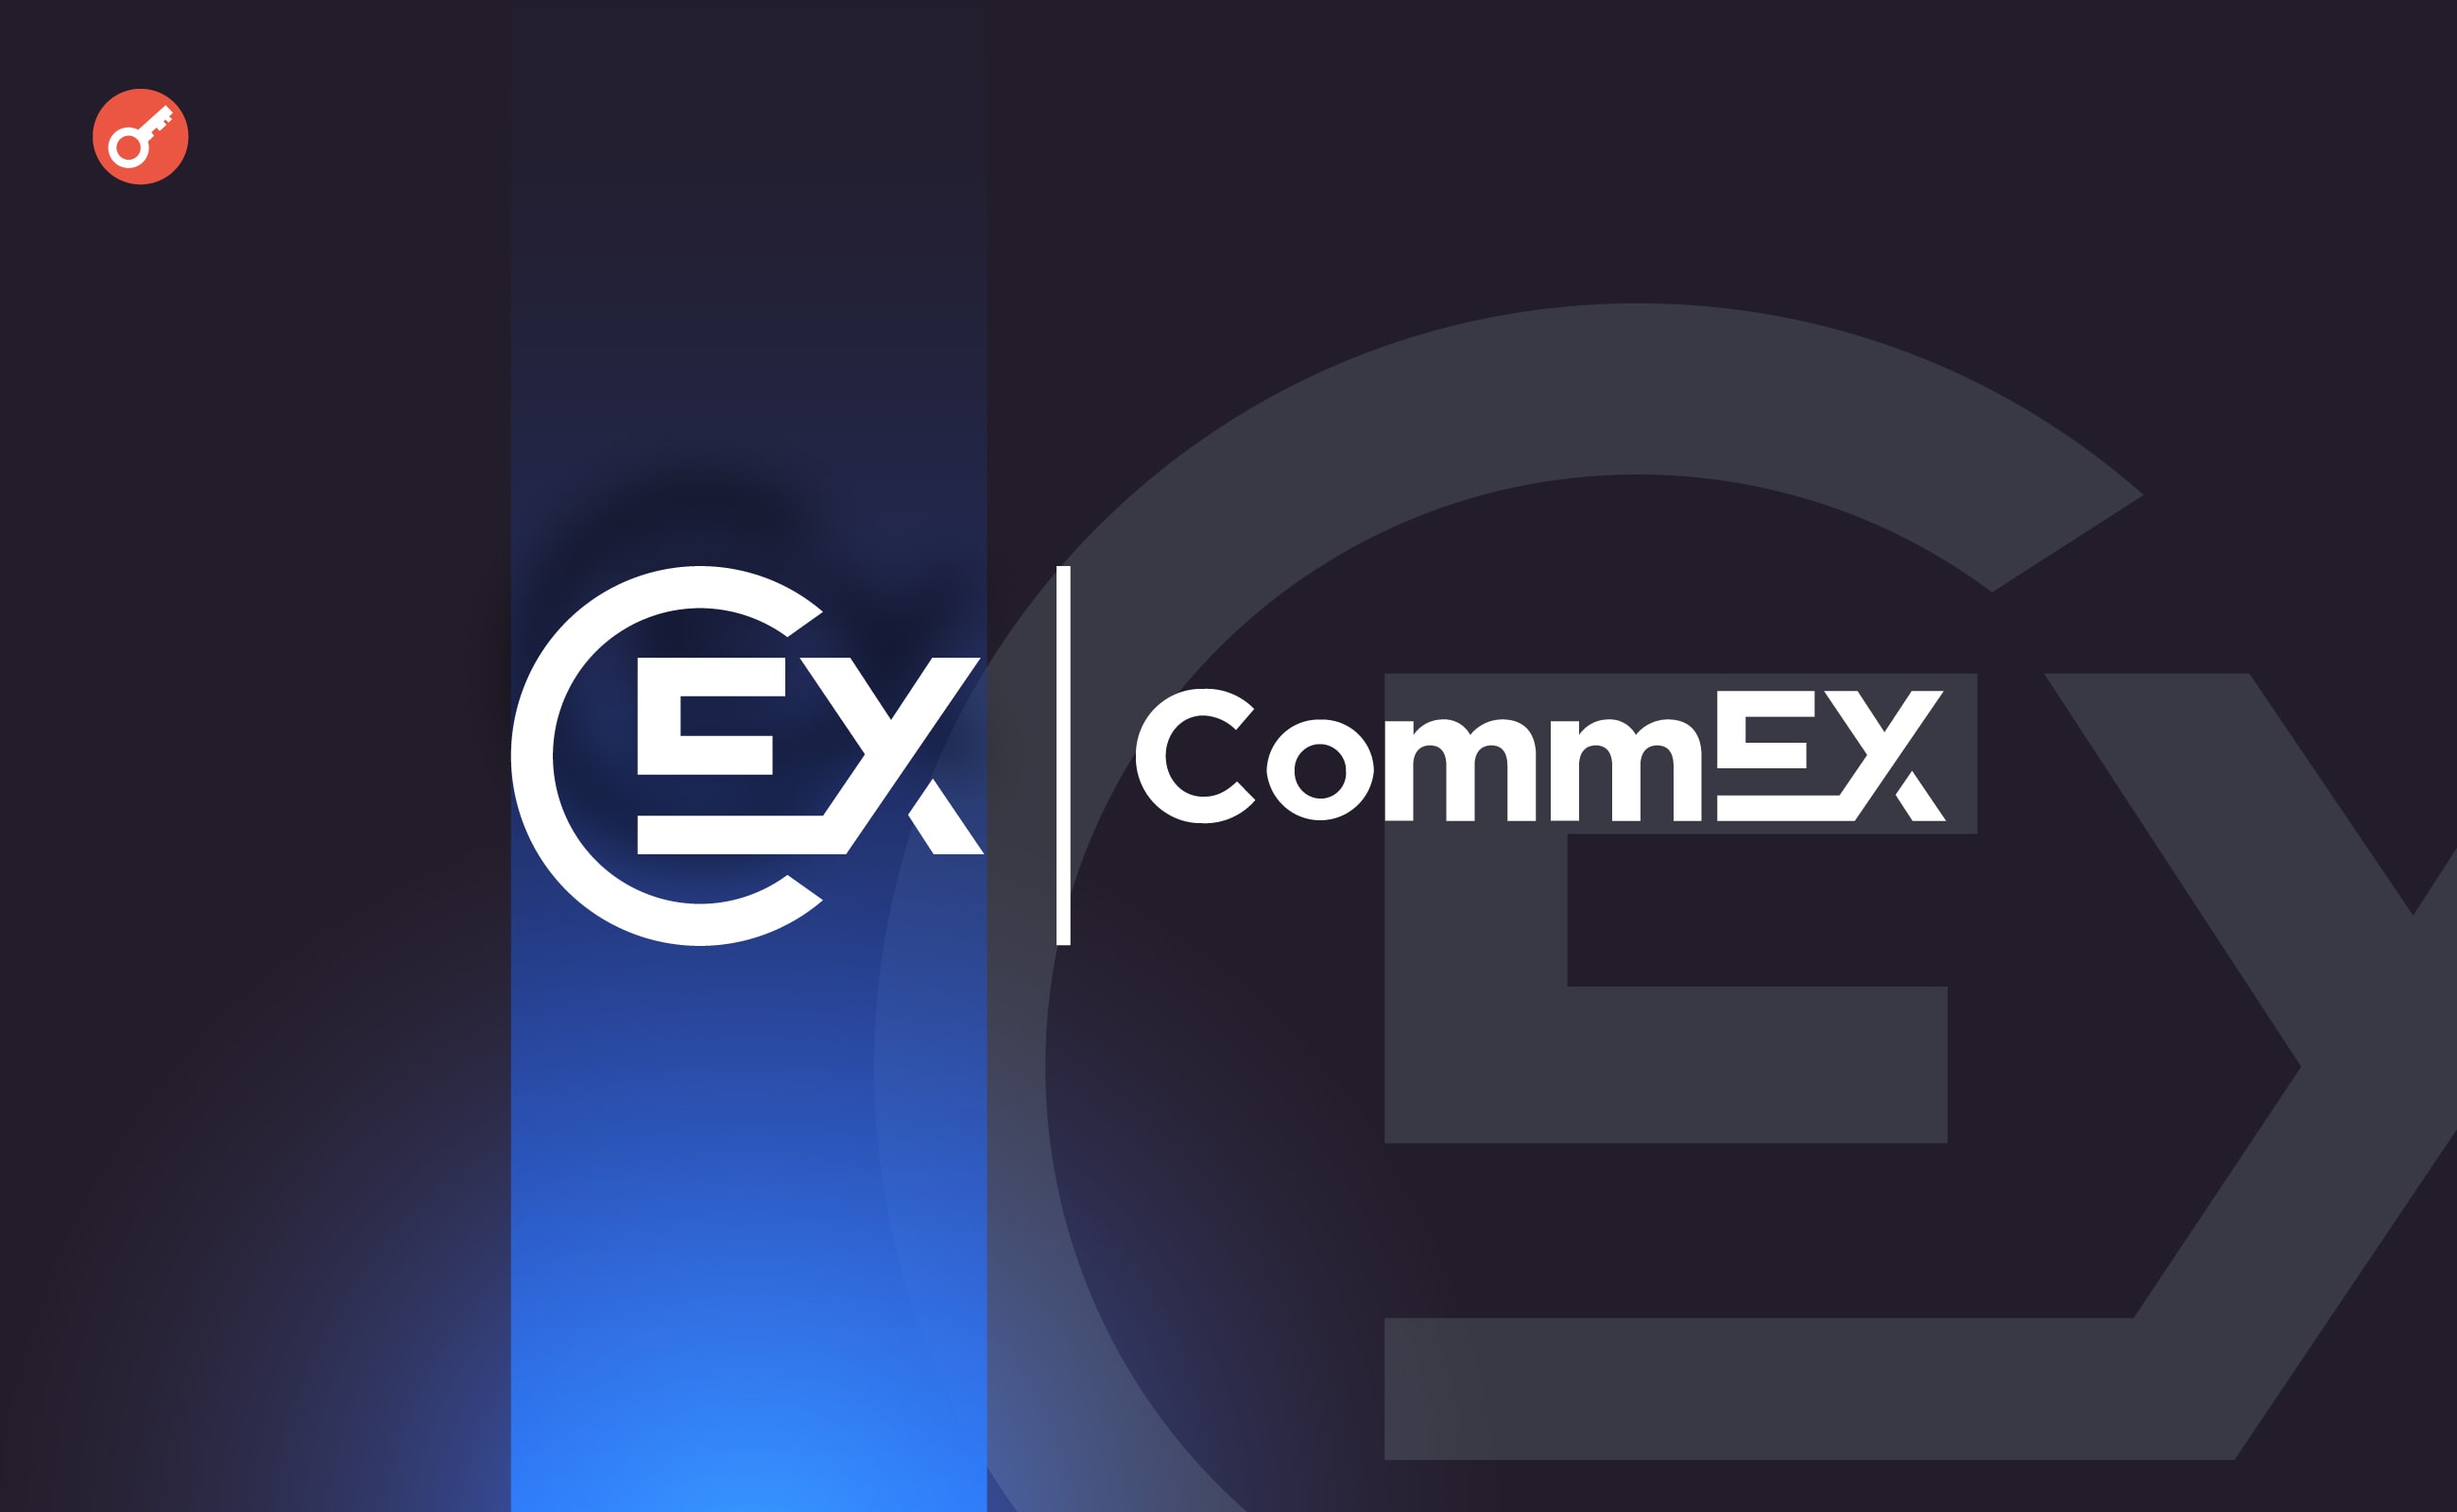 Компанія CommEX розкрила подробиці роботи нової криптобіржі. Головний колаж новини.